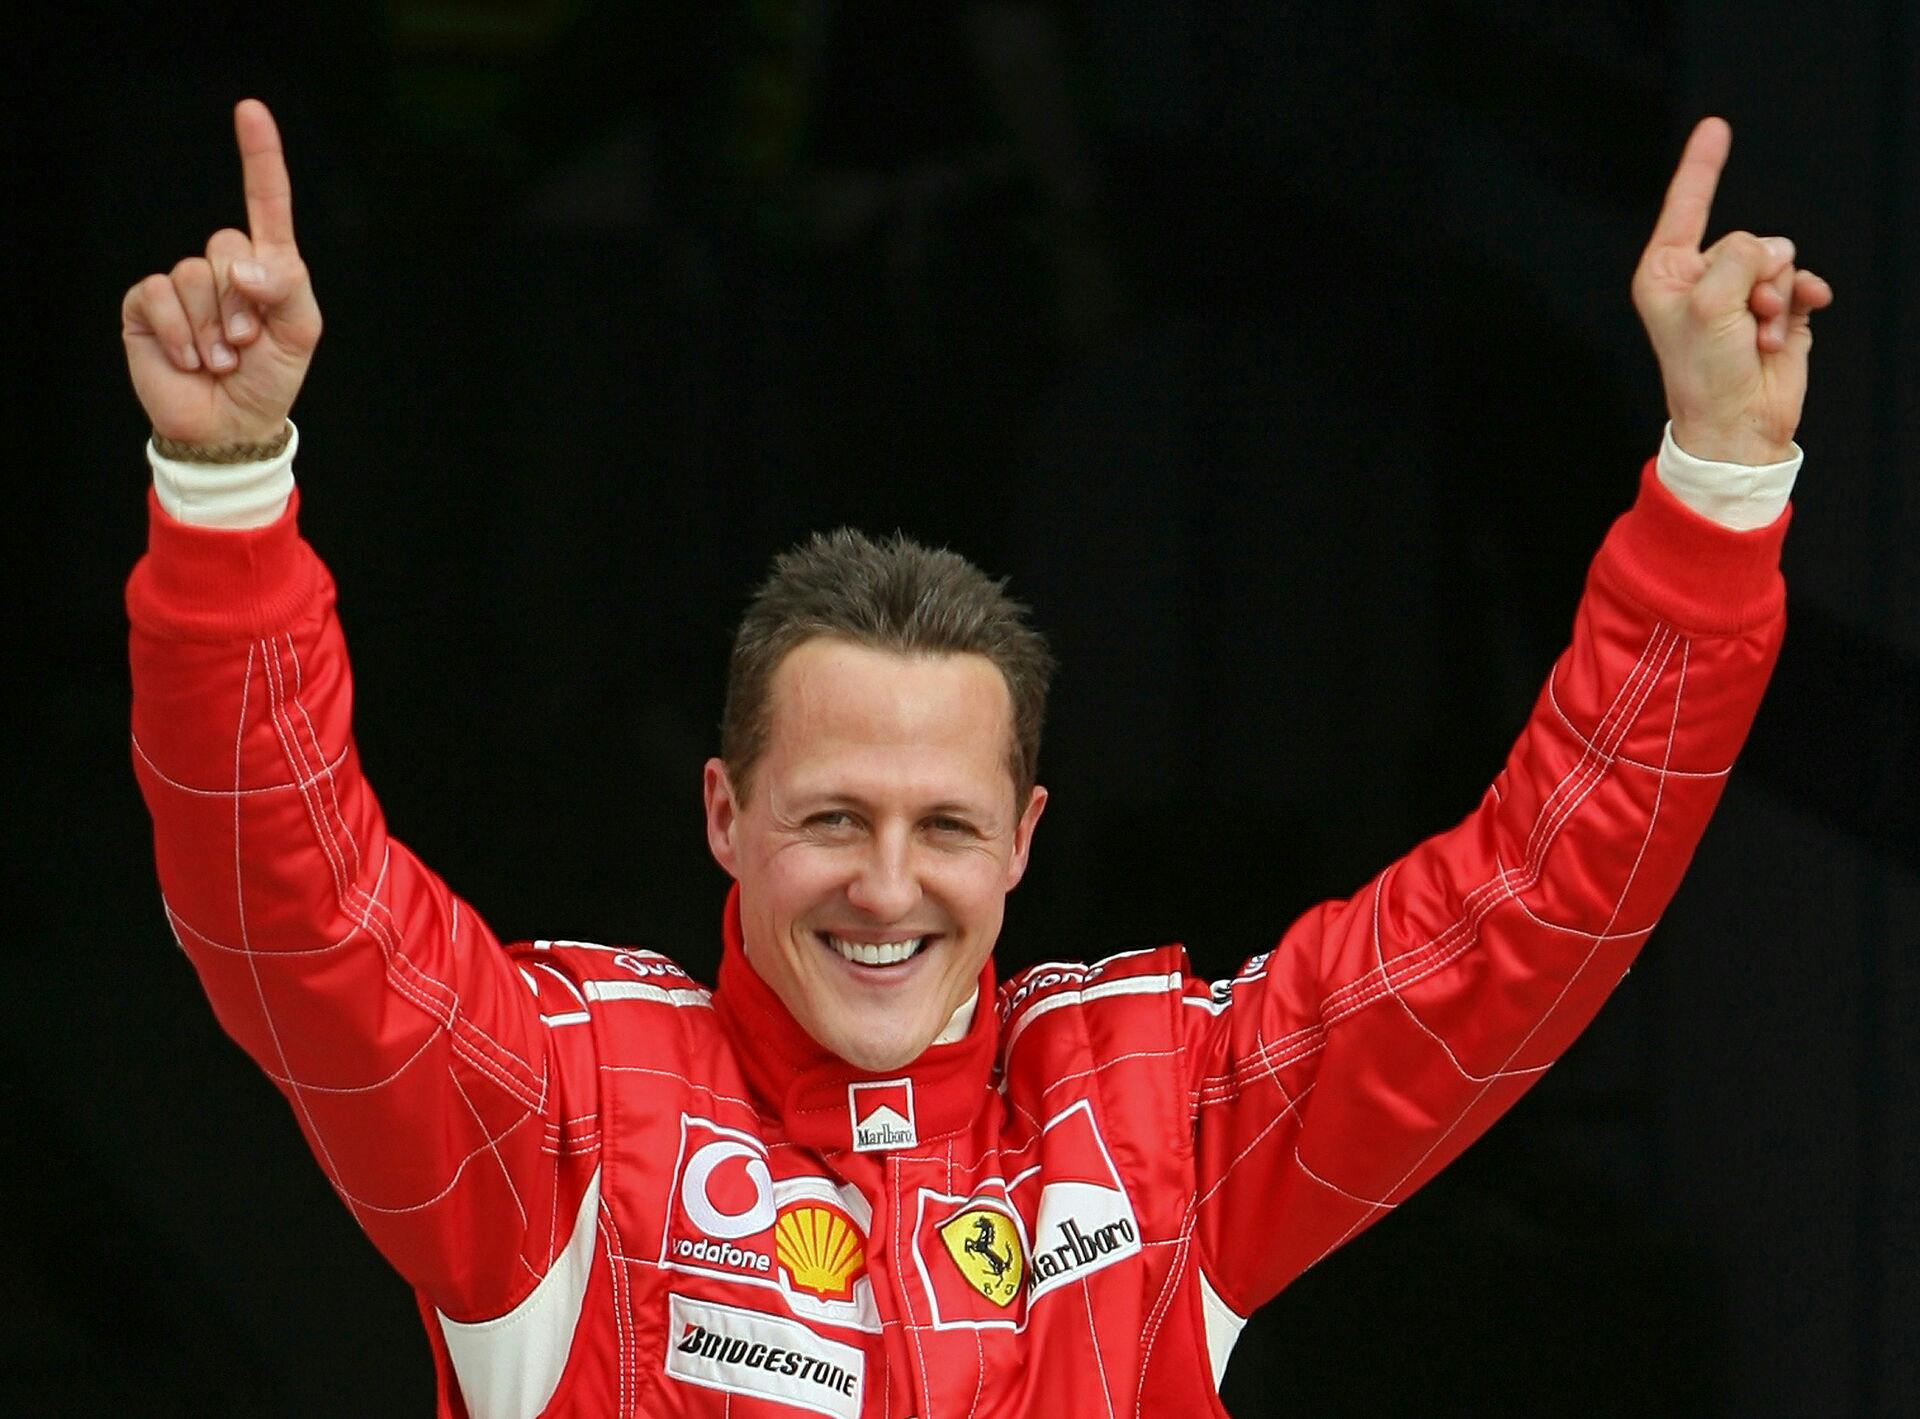 10 år efter ulykken er det stadig forbavsende lidt, som vi ved om Michael Schumachers tilstand. 